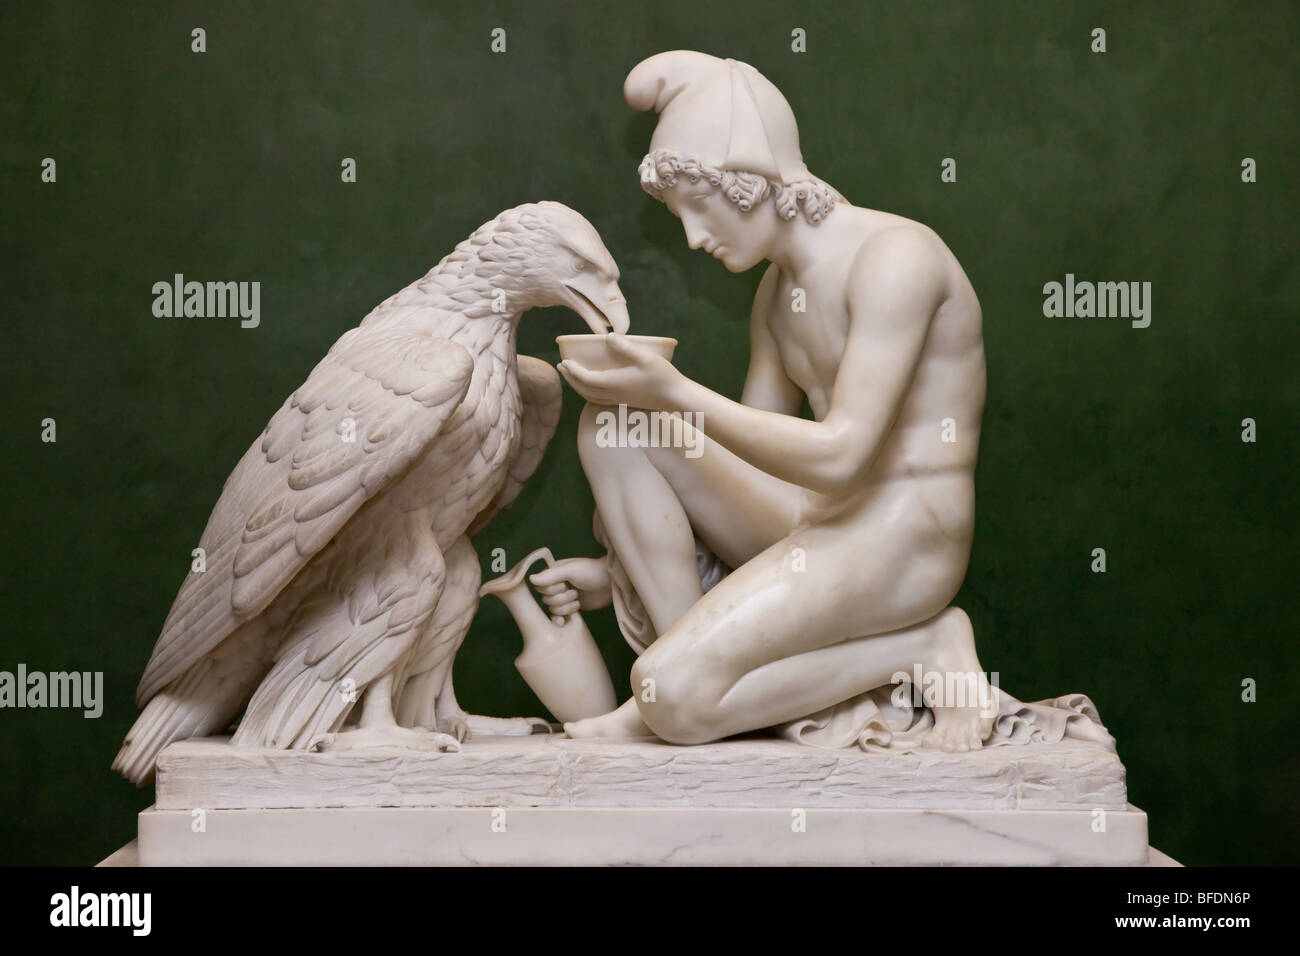 Sculpture de Ganymède avec Eagle Jupiters au Musée Thorvaldsen à Copenhague Danemark Banque D'Images